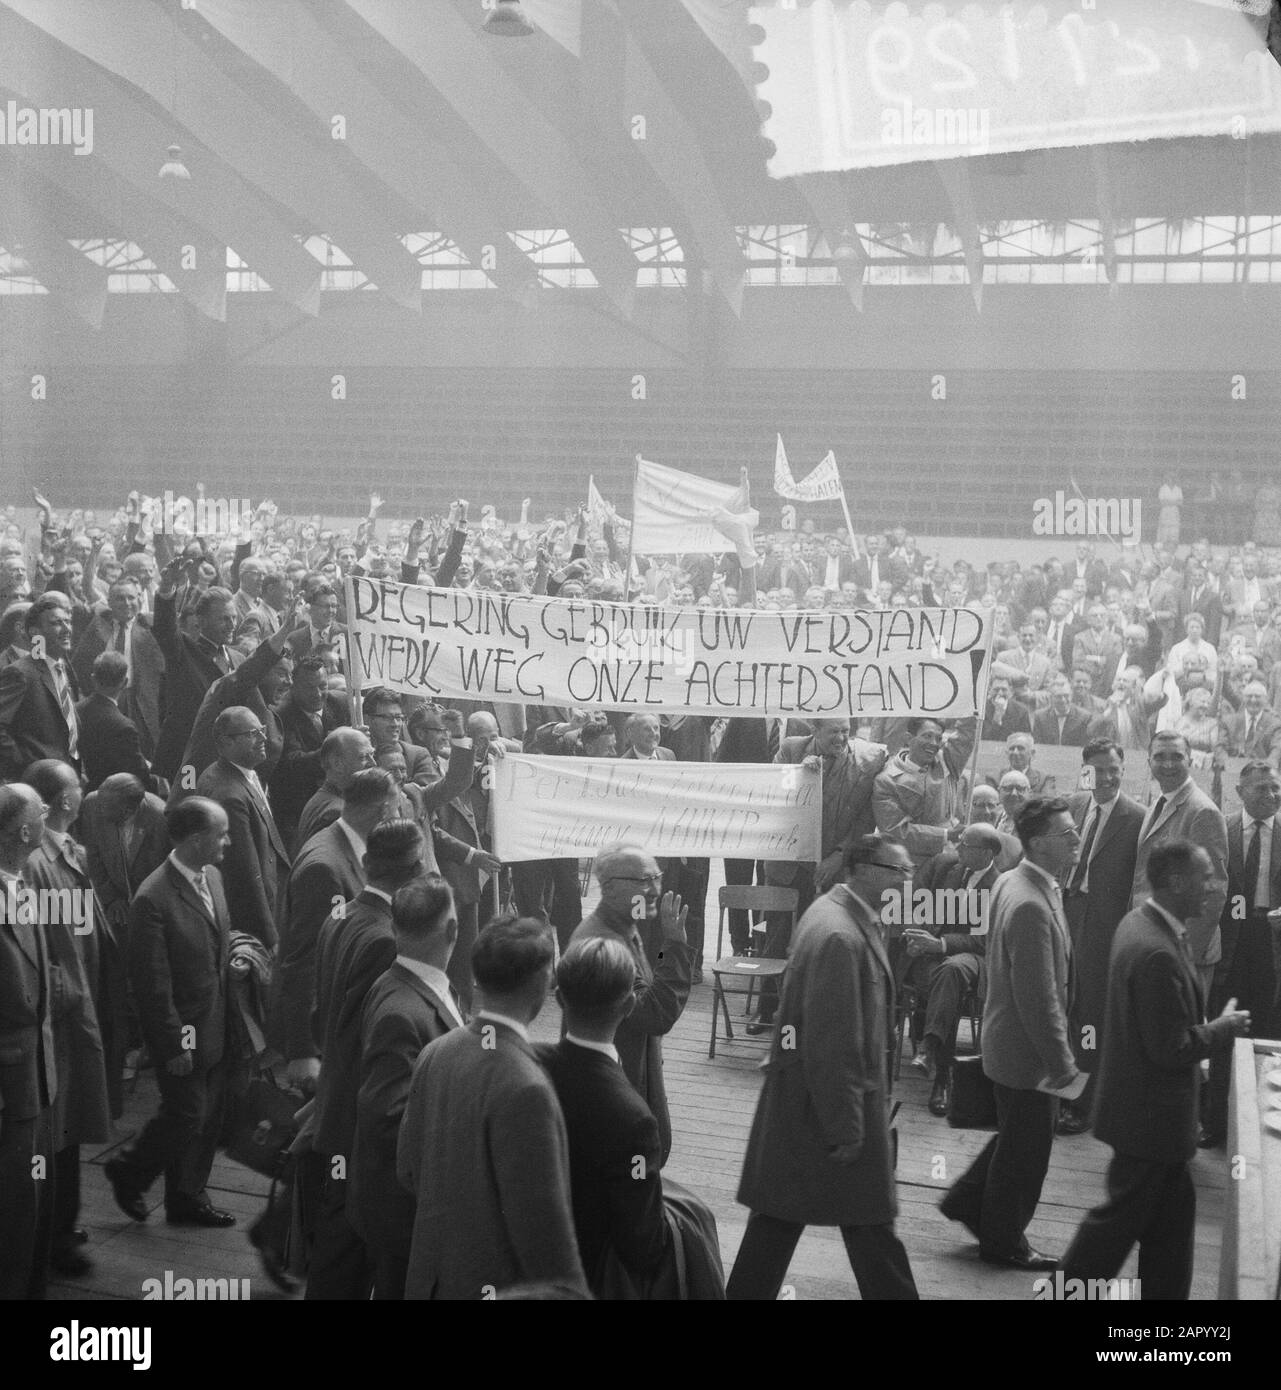 Reunión de protesta funcionarios fiscales Fecha: 8 de julio de 1961 palabras clave: Reuniones de protesta Foto de stock